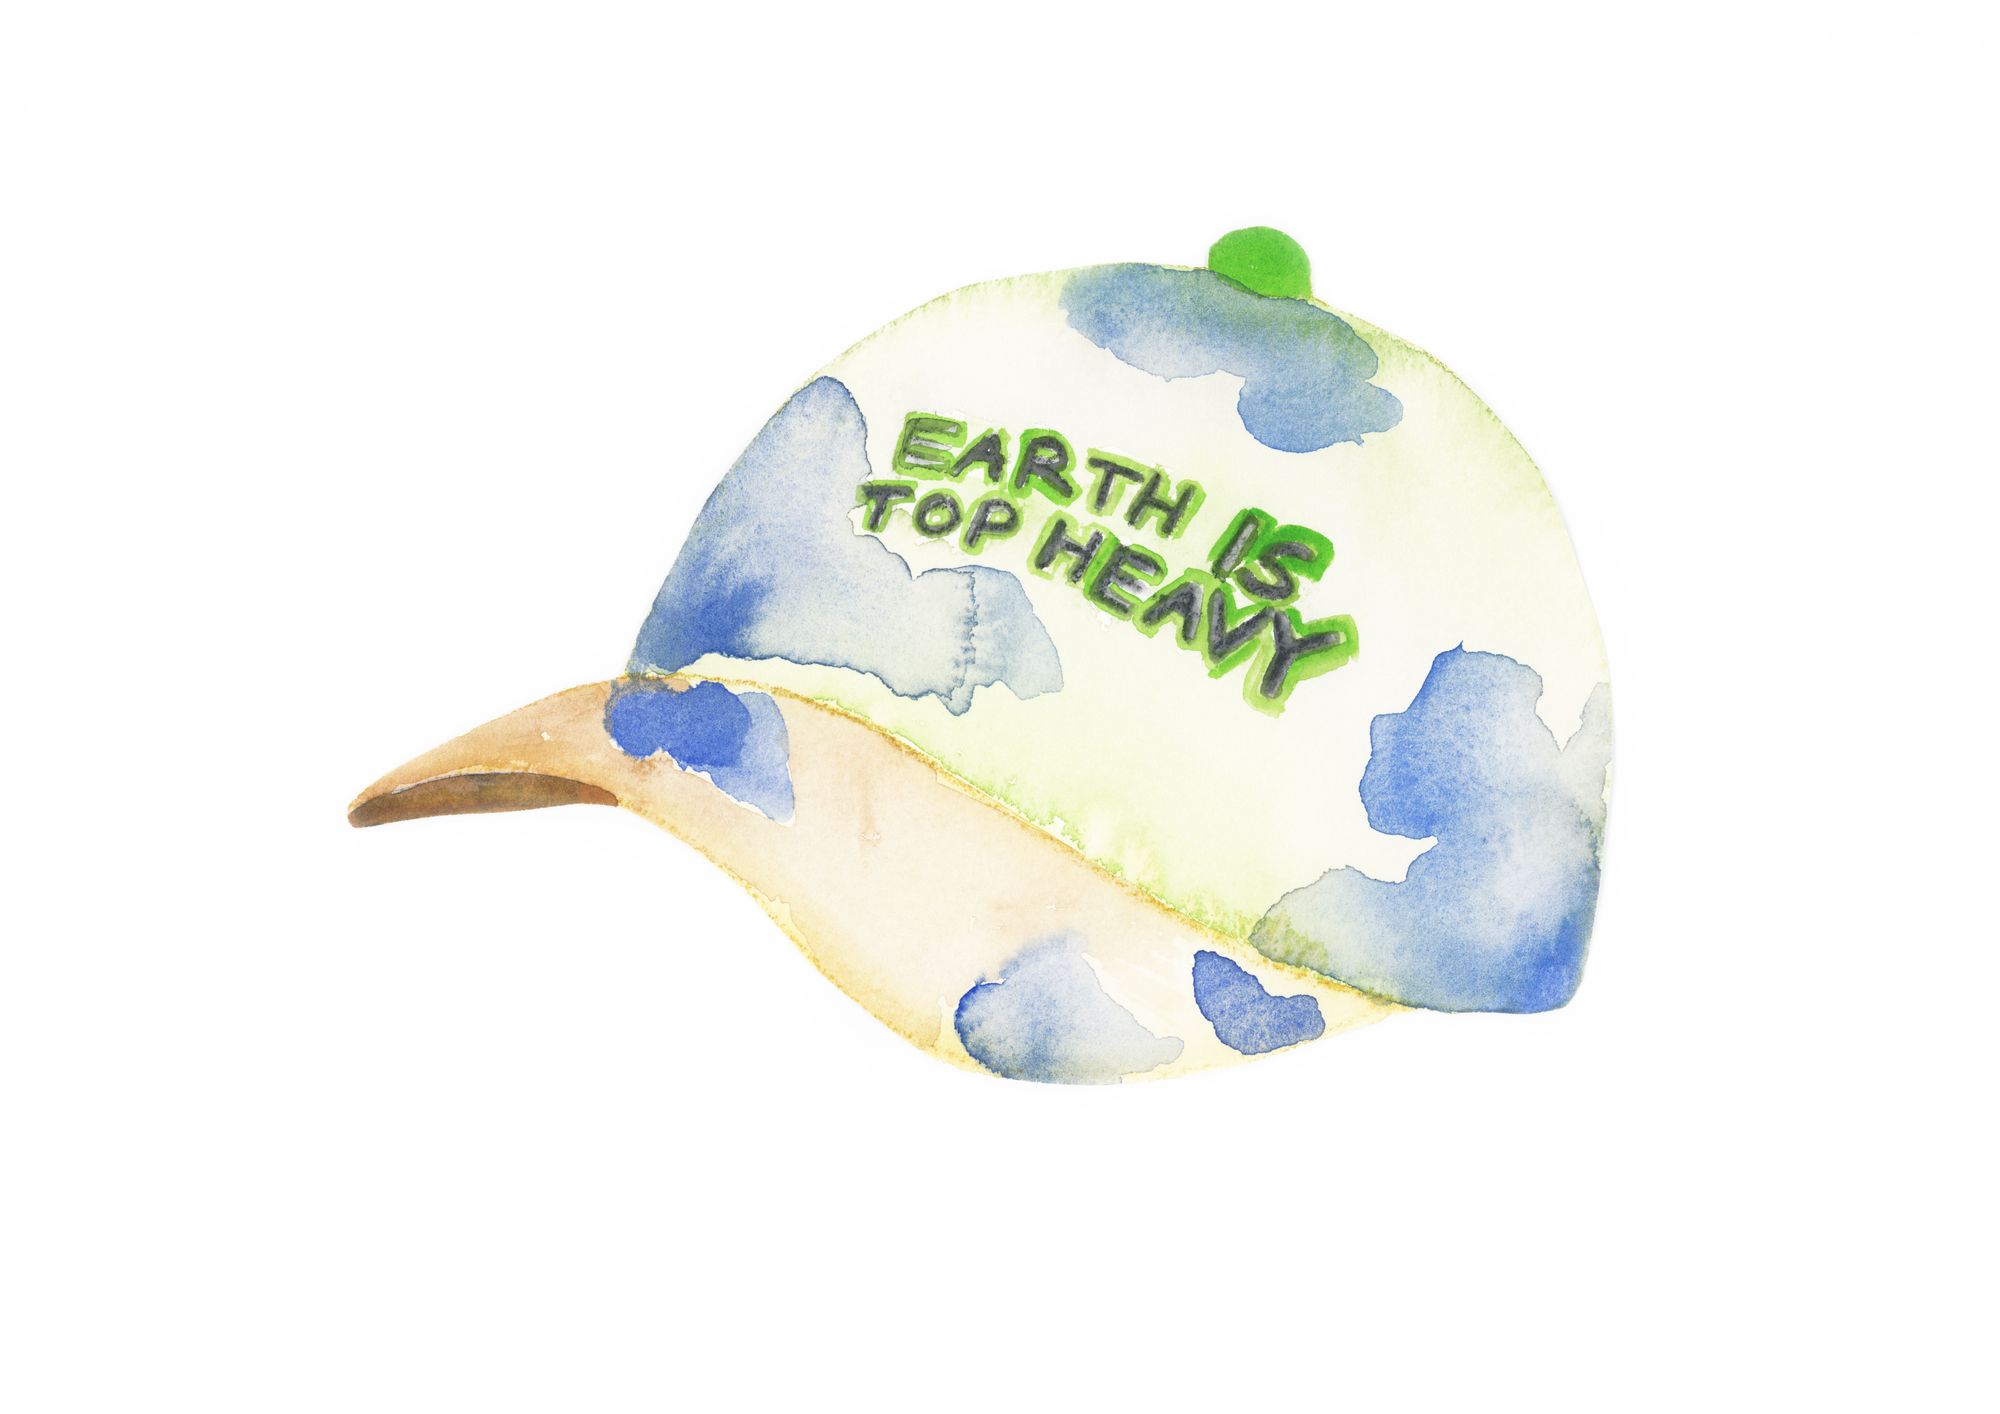 A watercolored hat with "Earth is Top Heavy" written across it.